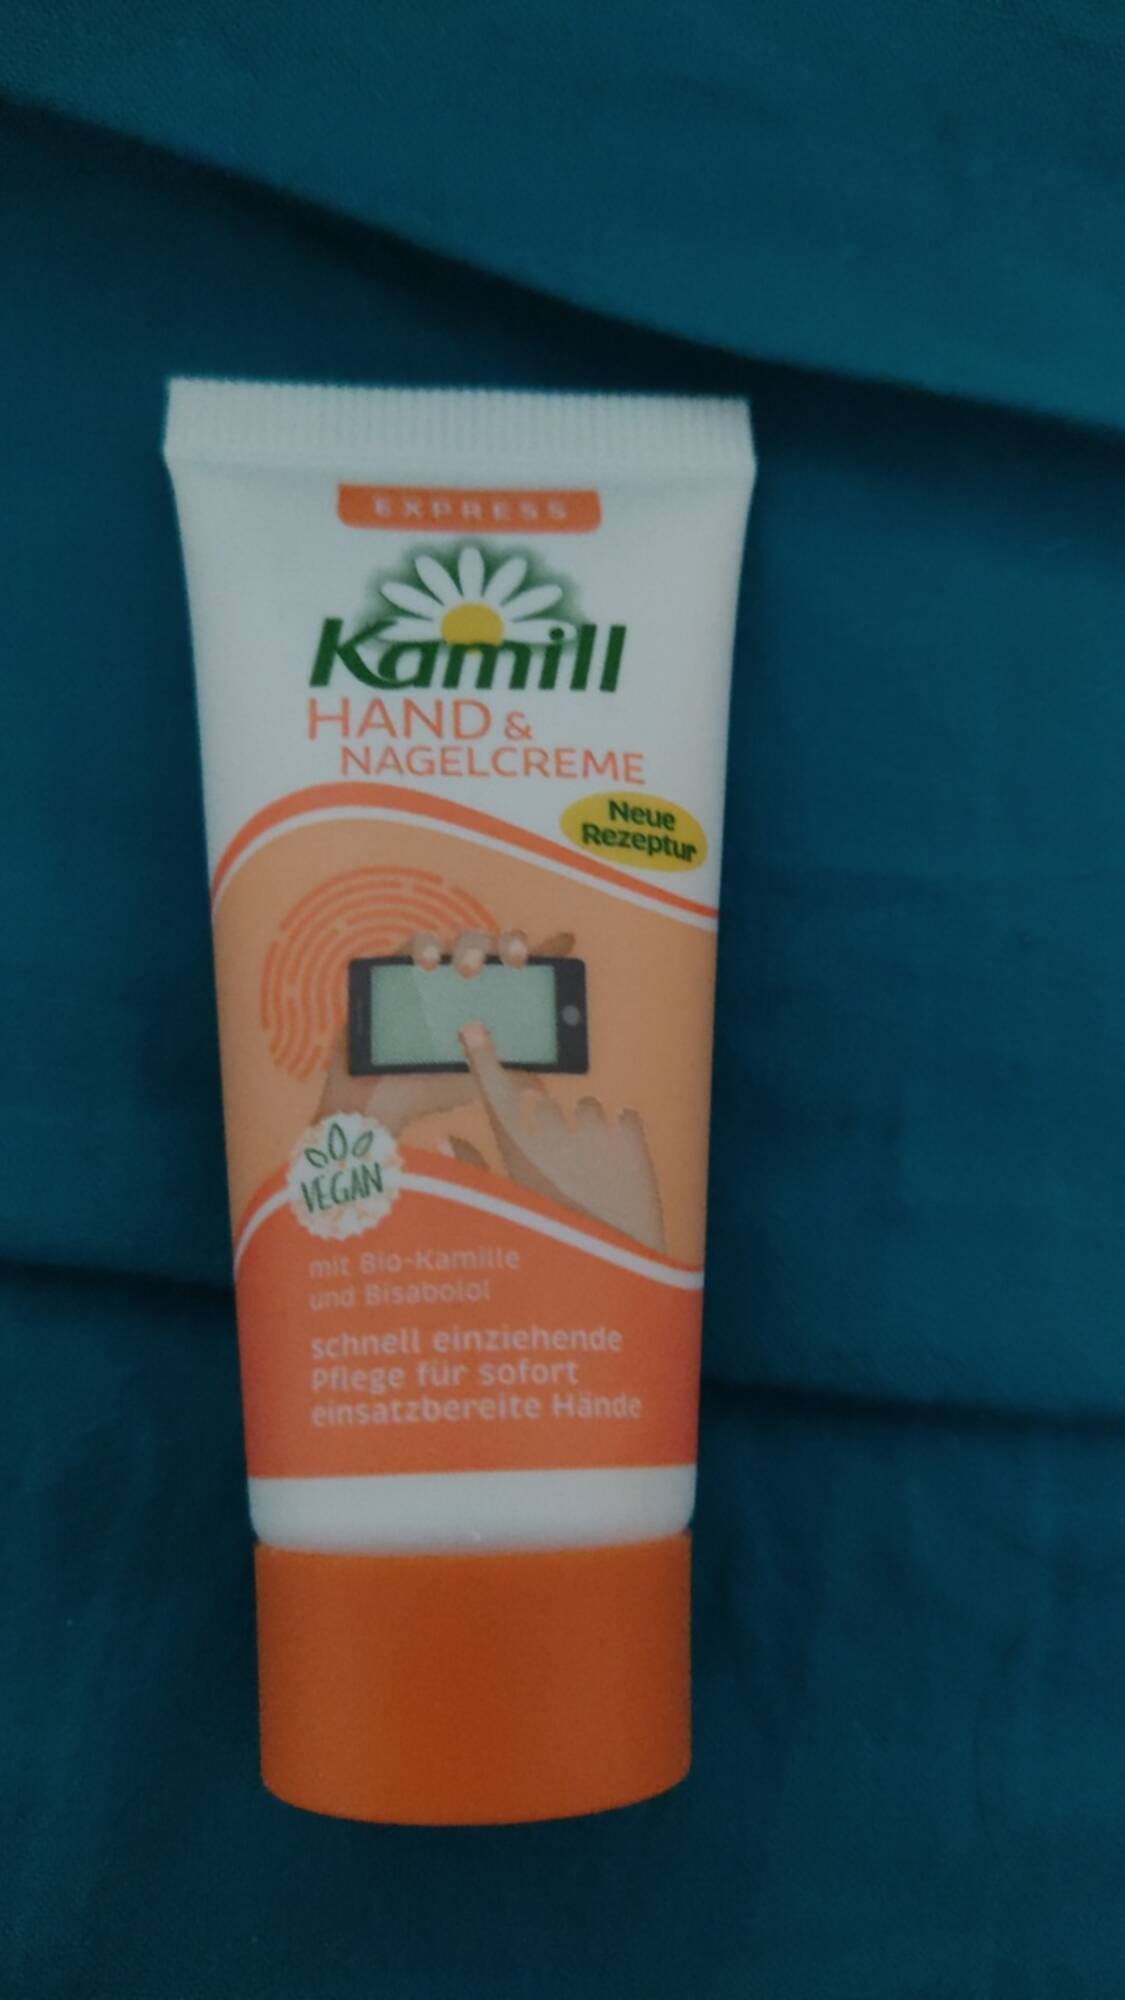 KAMILL - Hand & nagelcreme mit bio-kamille und bisabolol